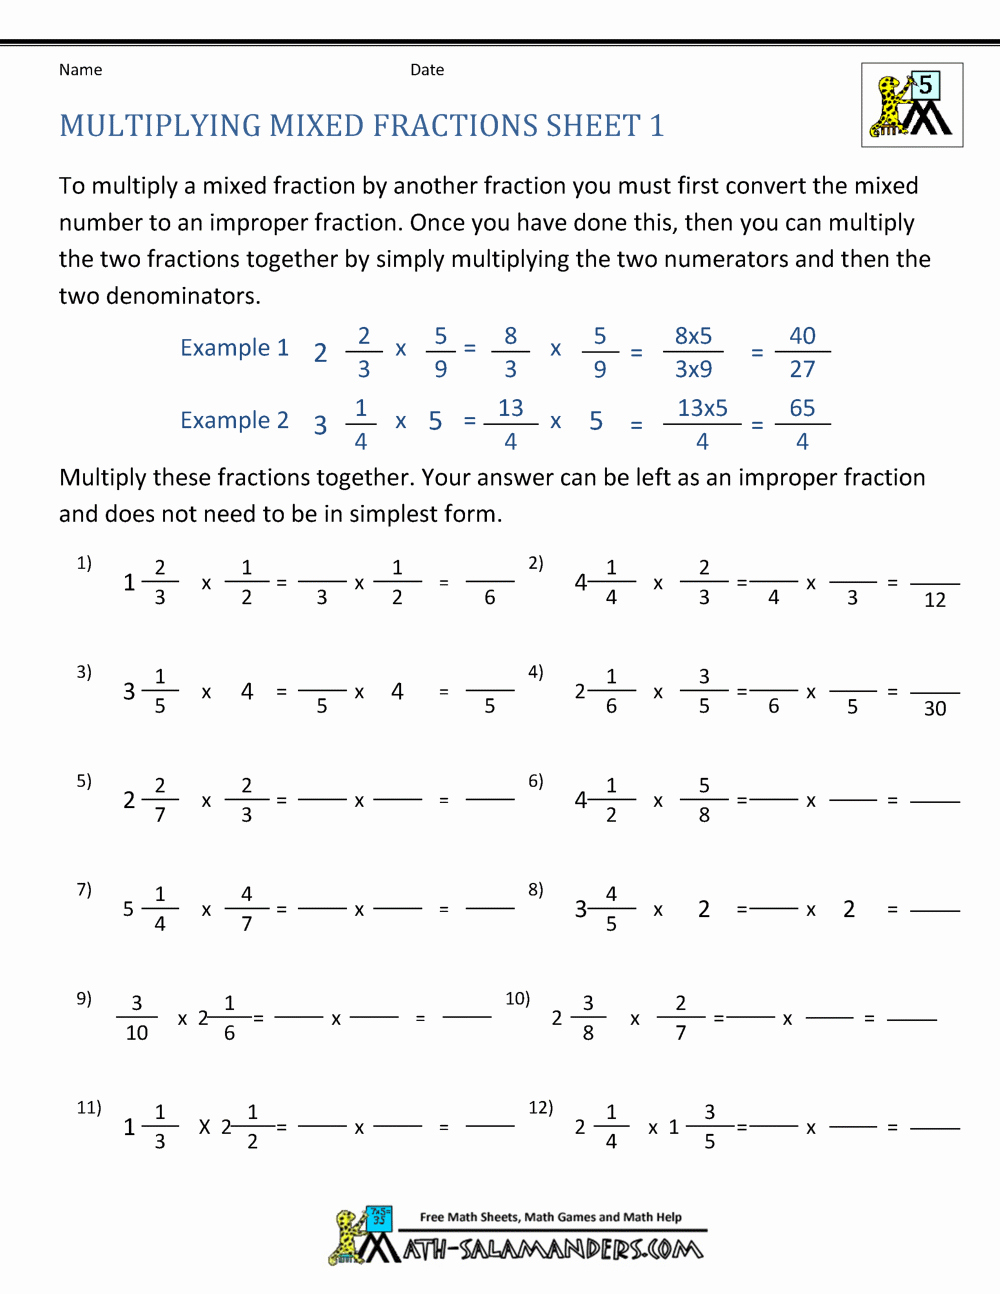 Multiplying Mixed Fractions Worksheet Elegant Multiplying Mixed Fractions